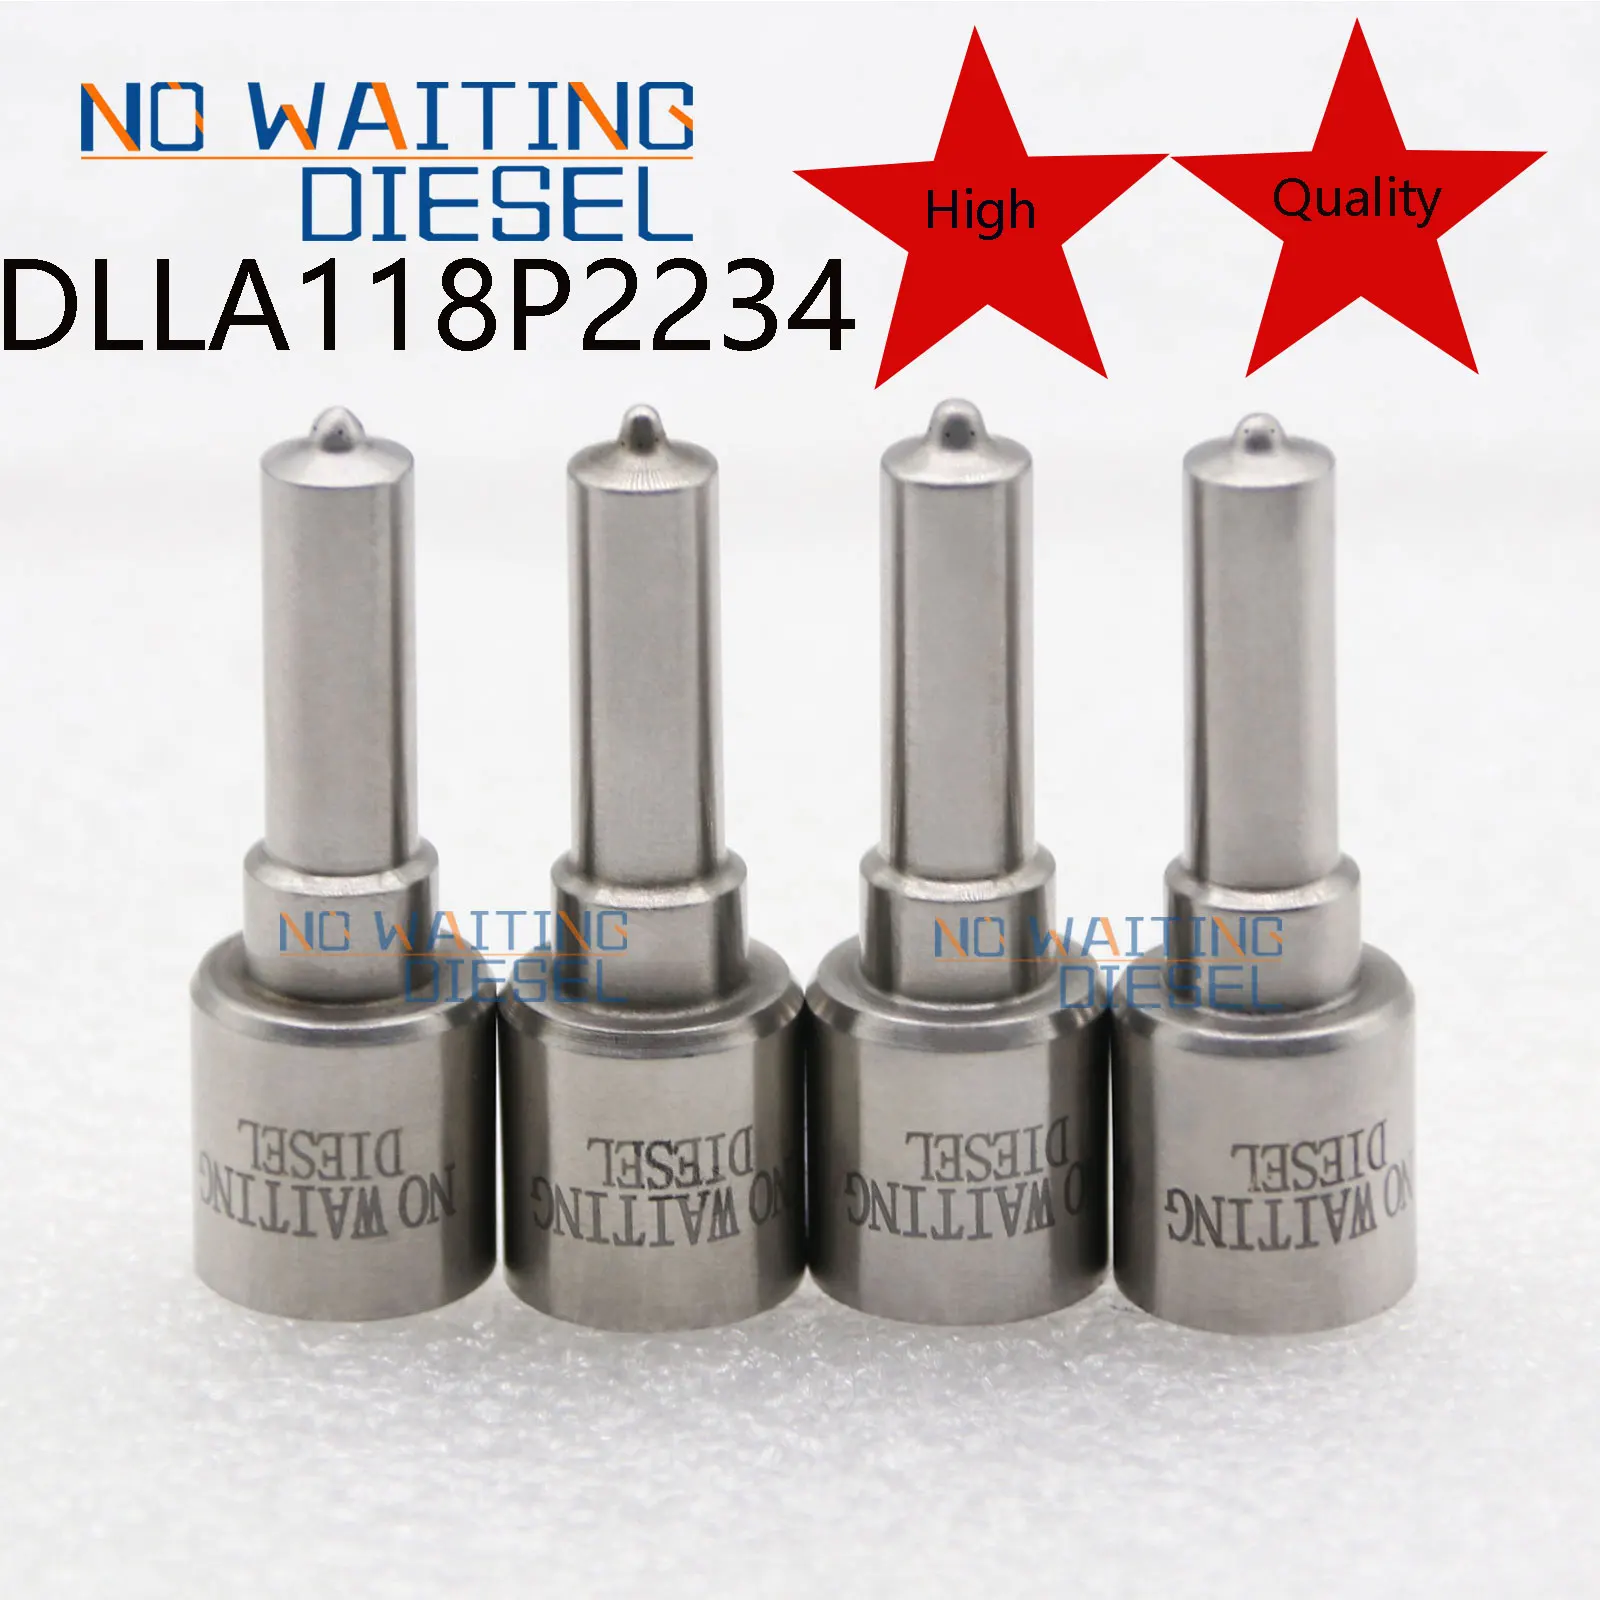 

4PCS DLLA118P2234 Fuel Injector Nozzle DLLA 118 P 2234 Oil Spray Nozzle DLLA 118P2234 (0 433 172 234) For Injection 0445120272